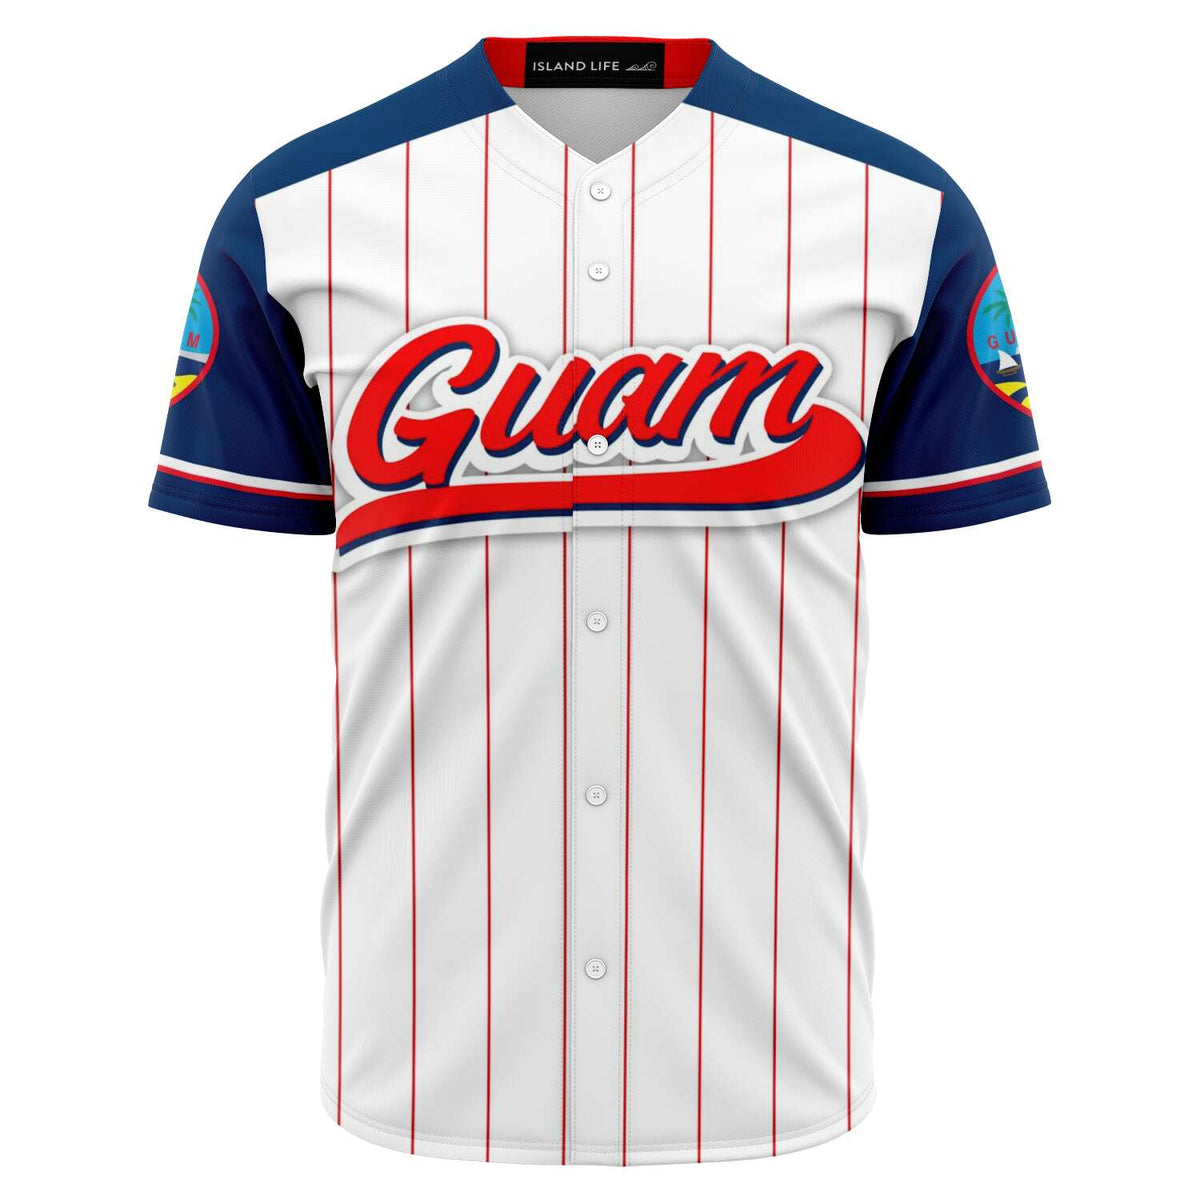 Guam Black Baseball Jersey with Personalization – Island Life